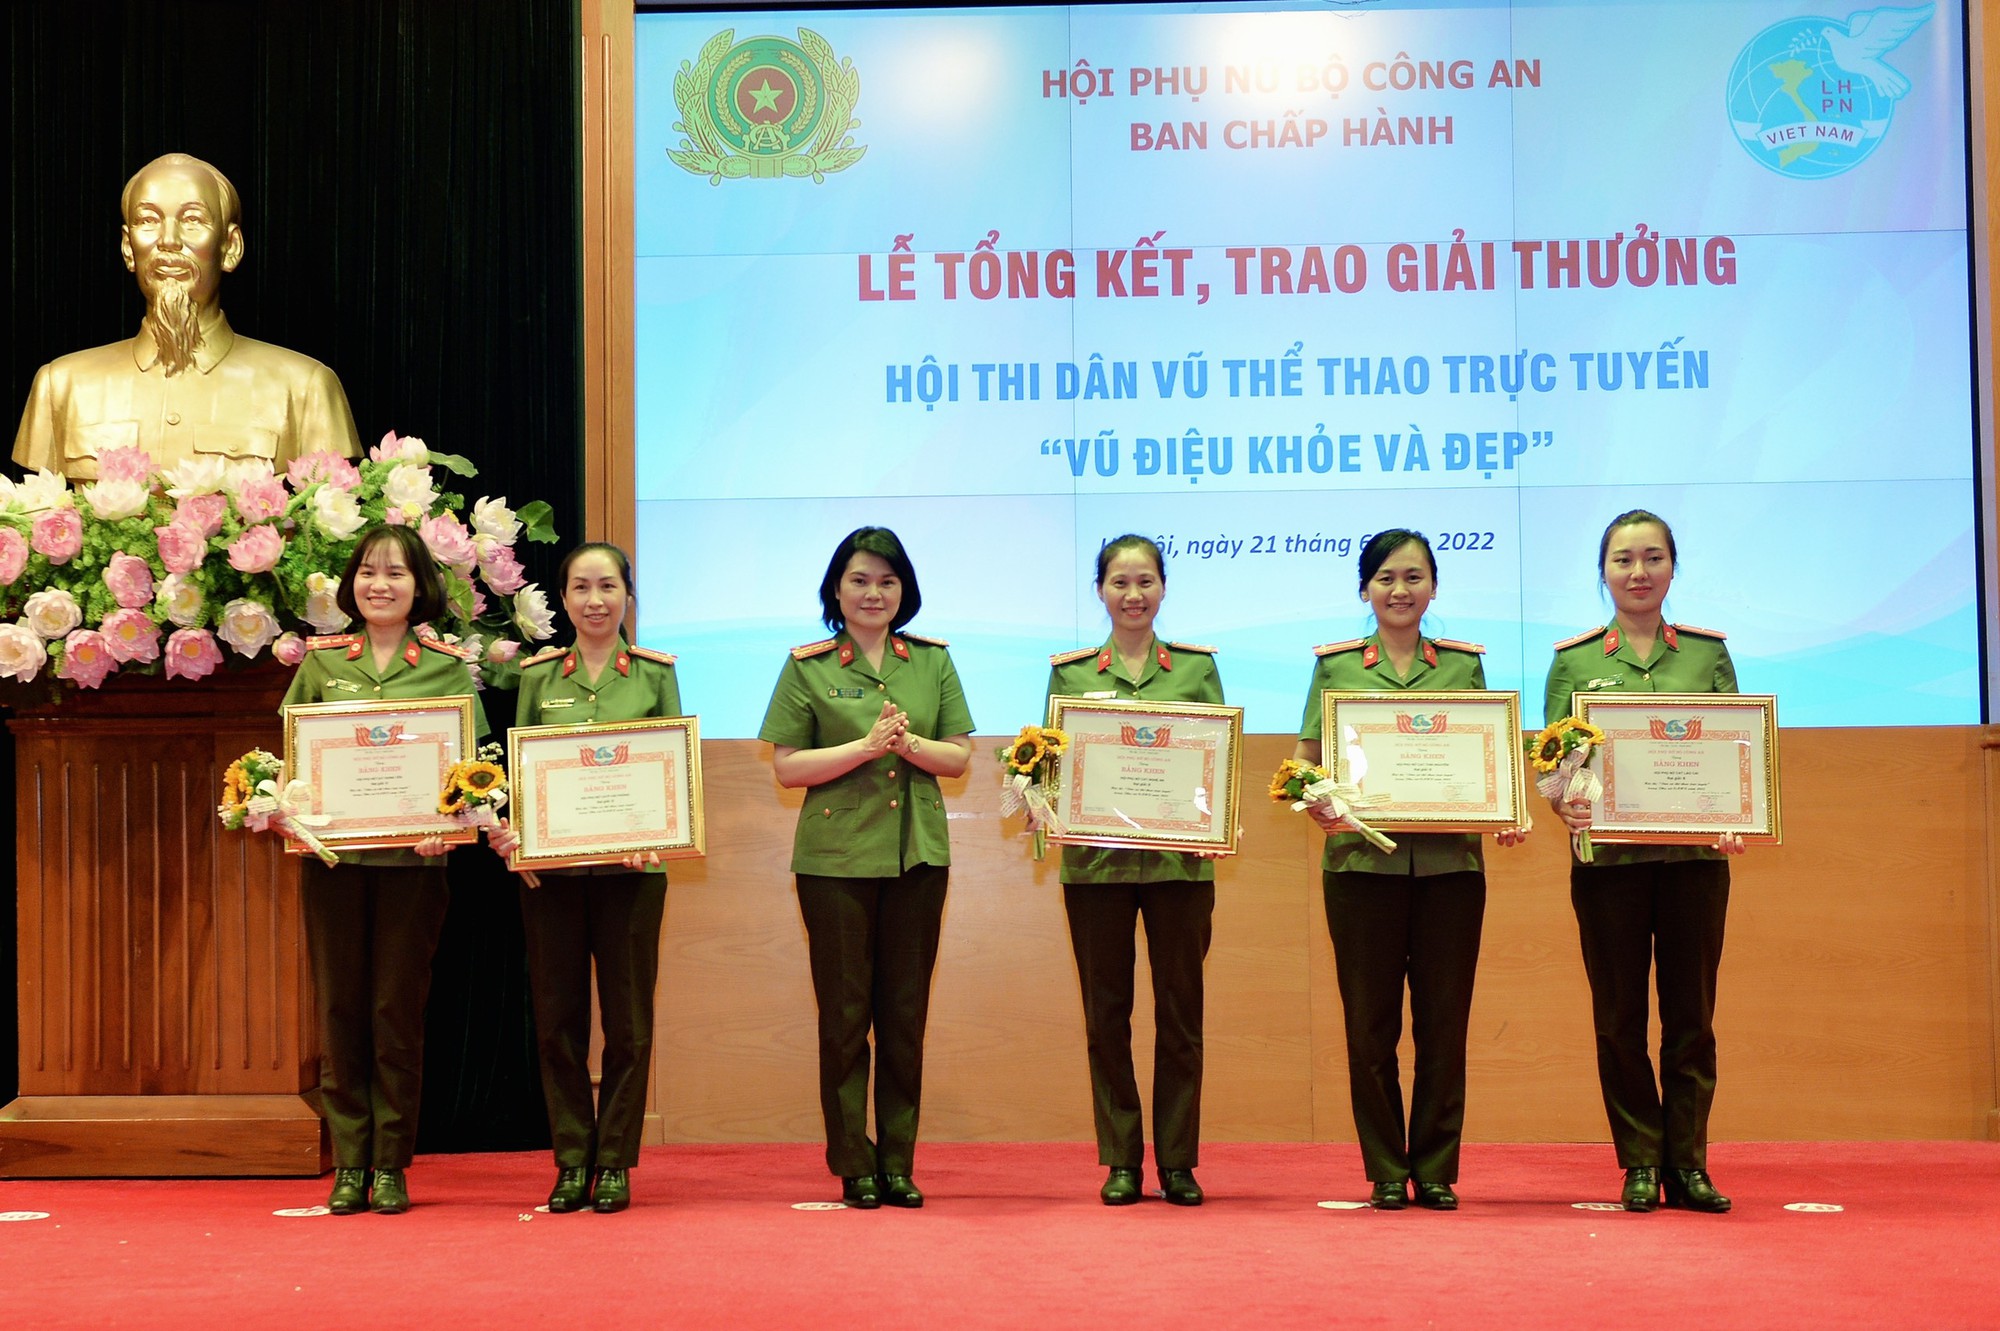 Hội Phụ nữ Công an tỉnh Lào Cai đoạt giải B Hội thi dân vũ thể thao trực tuyến trong lực lượng Công an nhân dân - Ảnh 1.